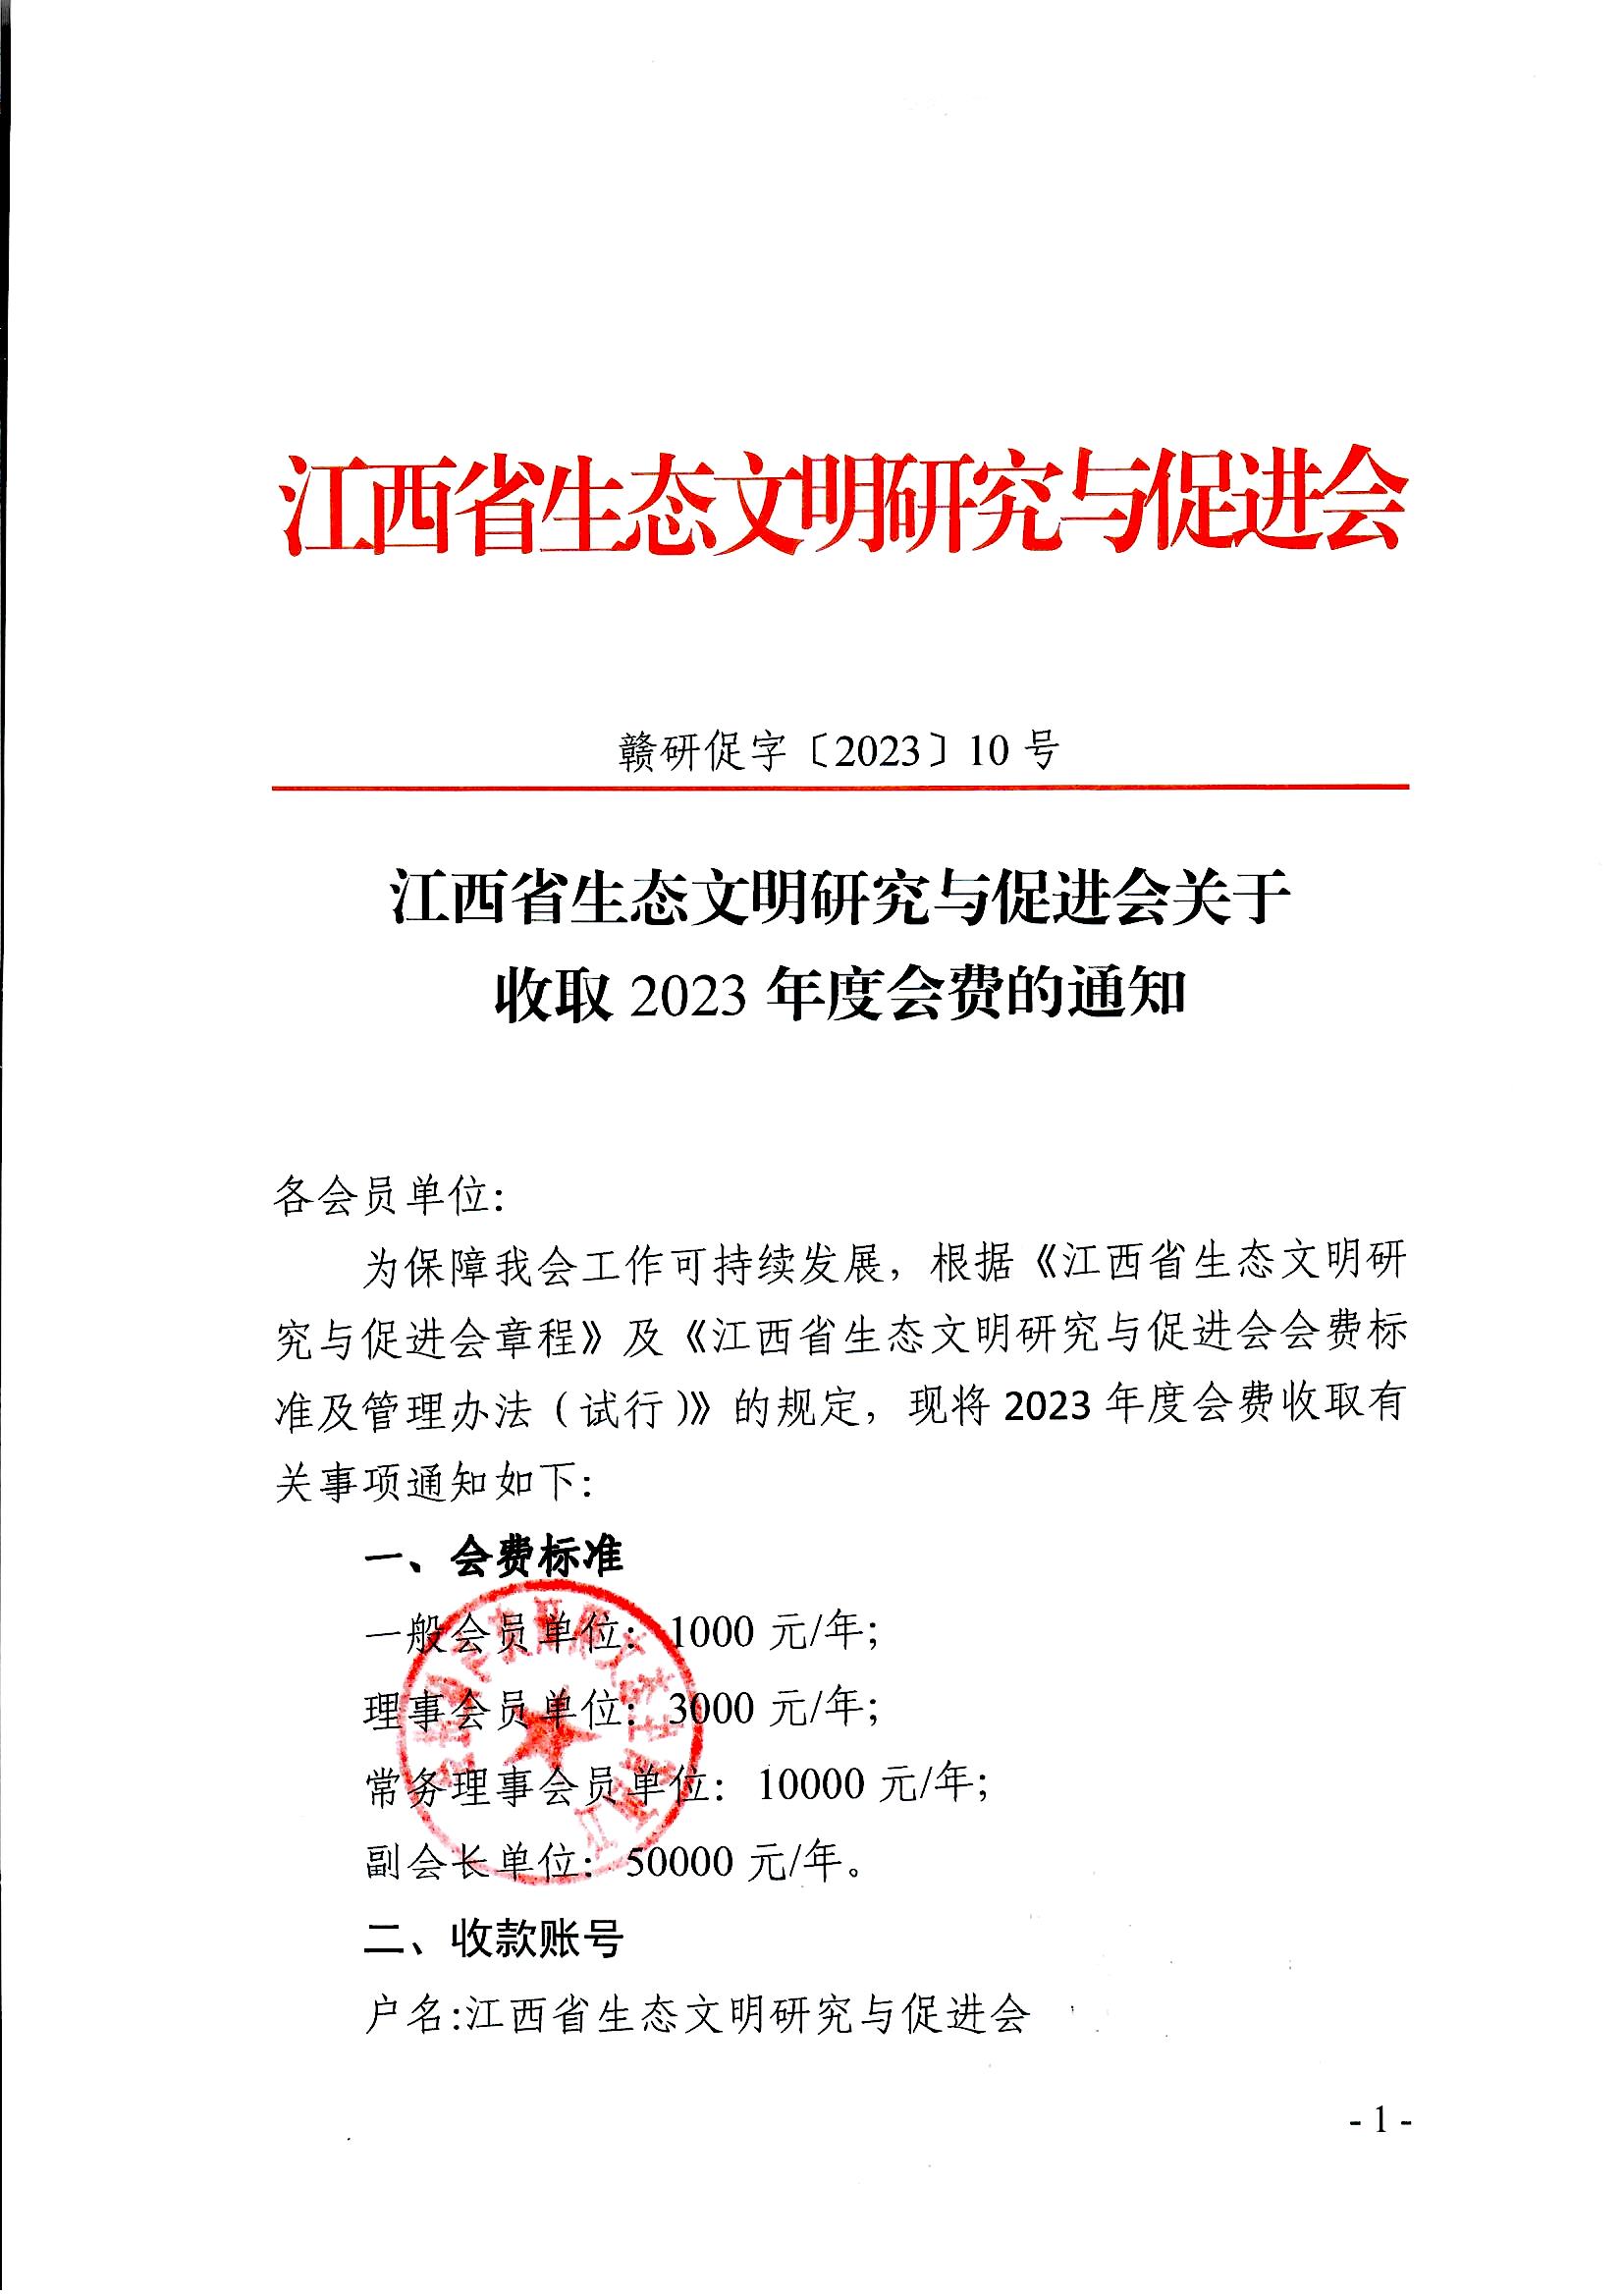 江西省生态文明研究与促进会关于收取2023年度会费的通知_页面_1.jpg